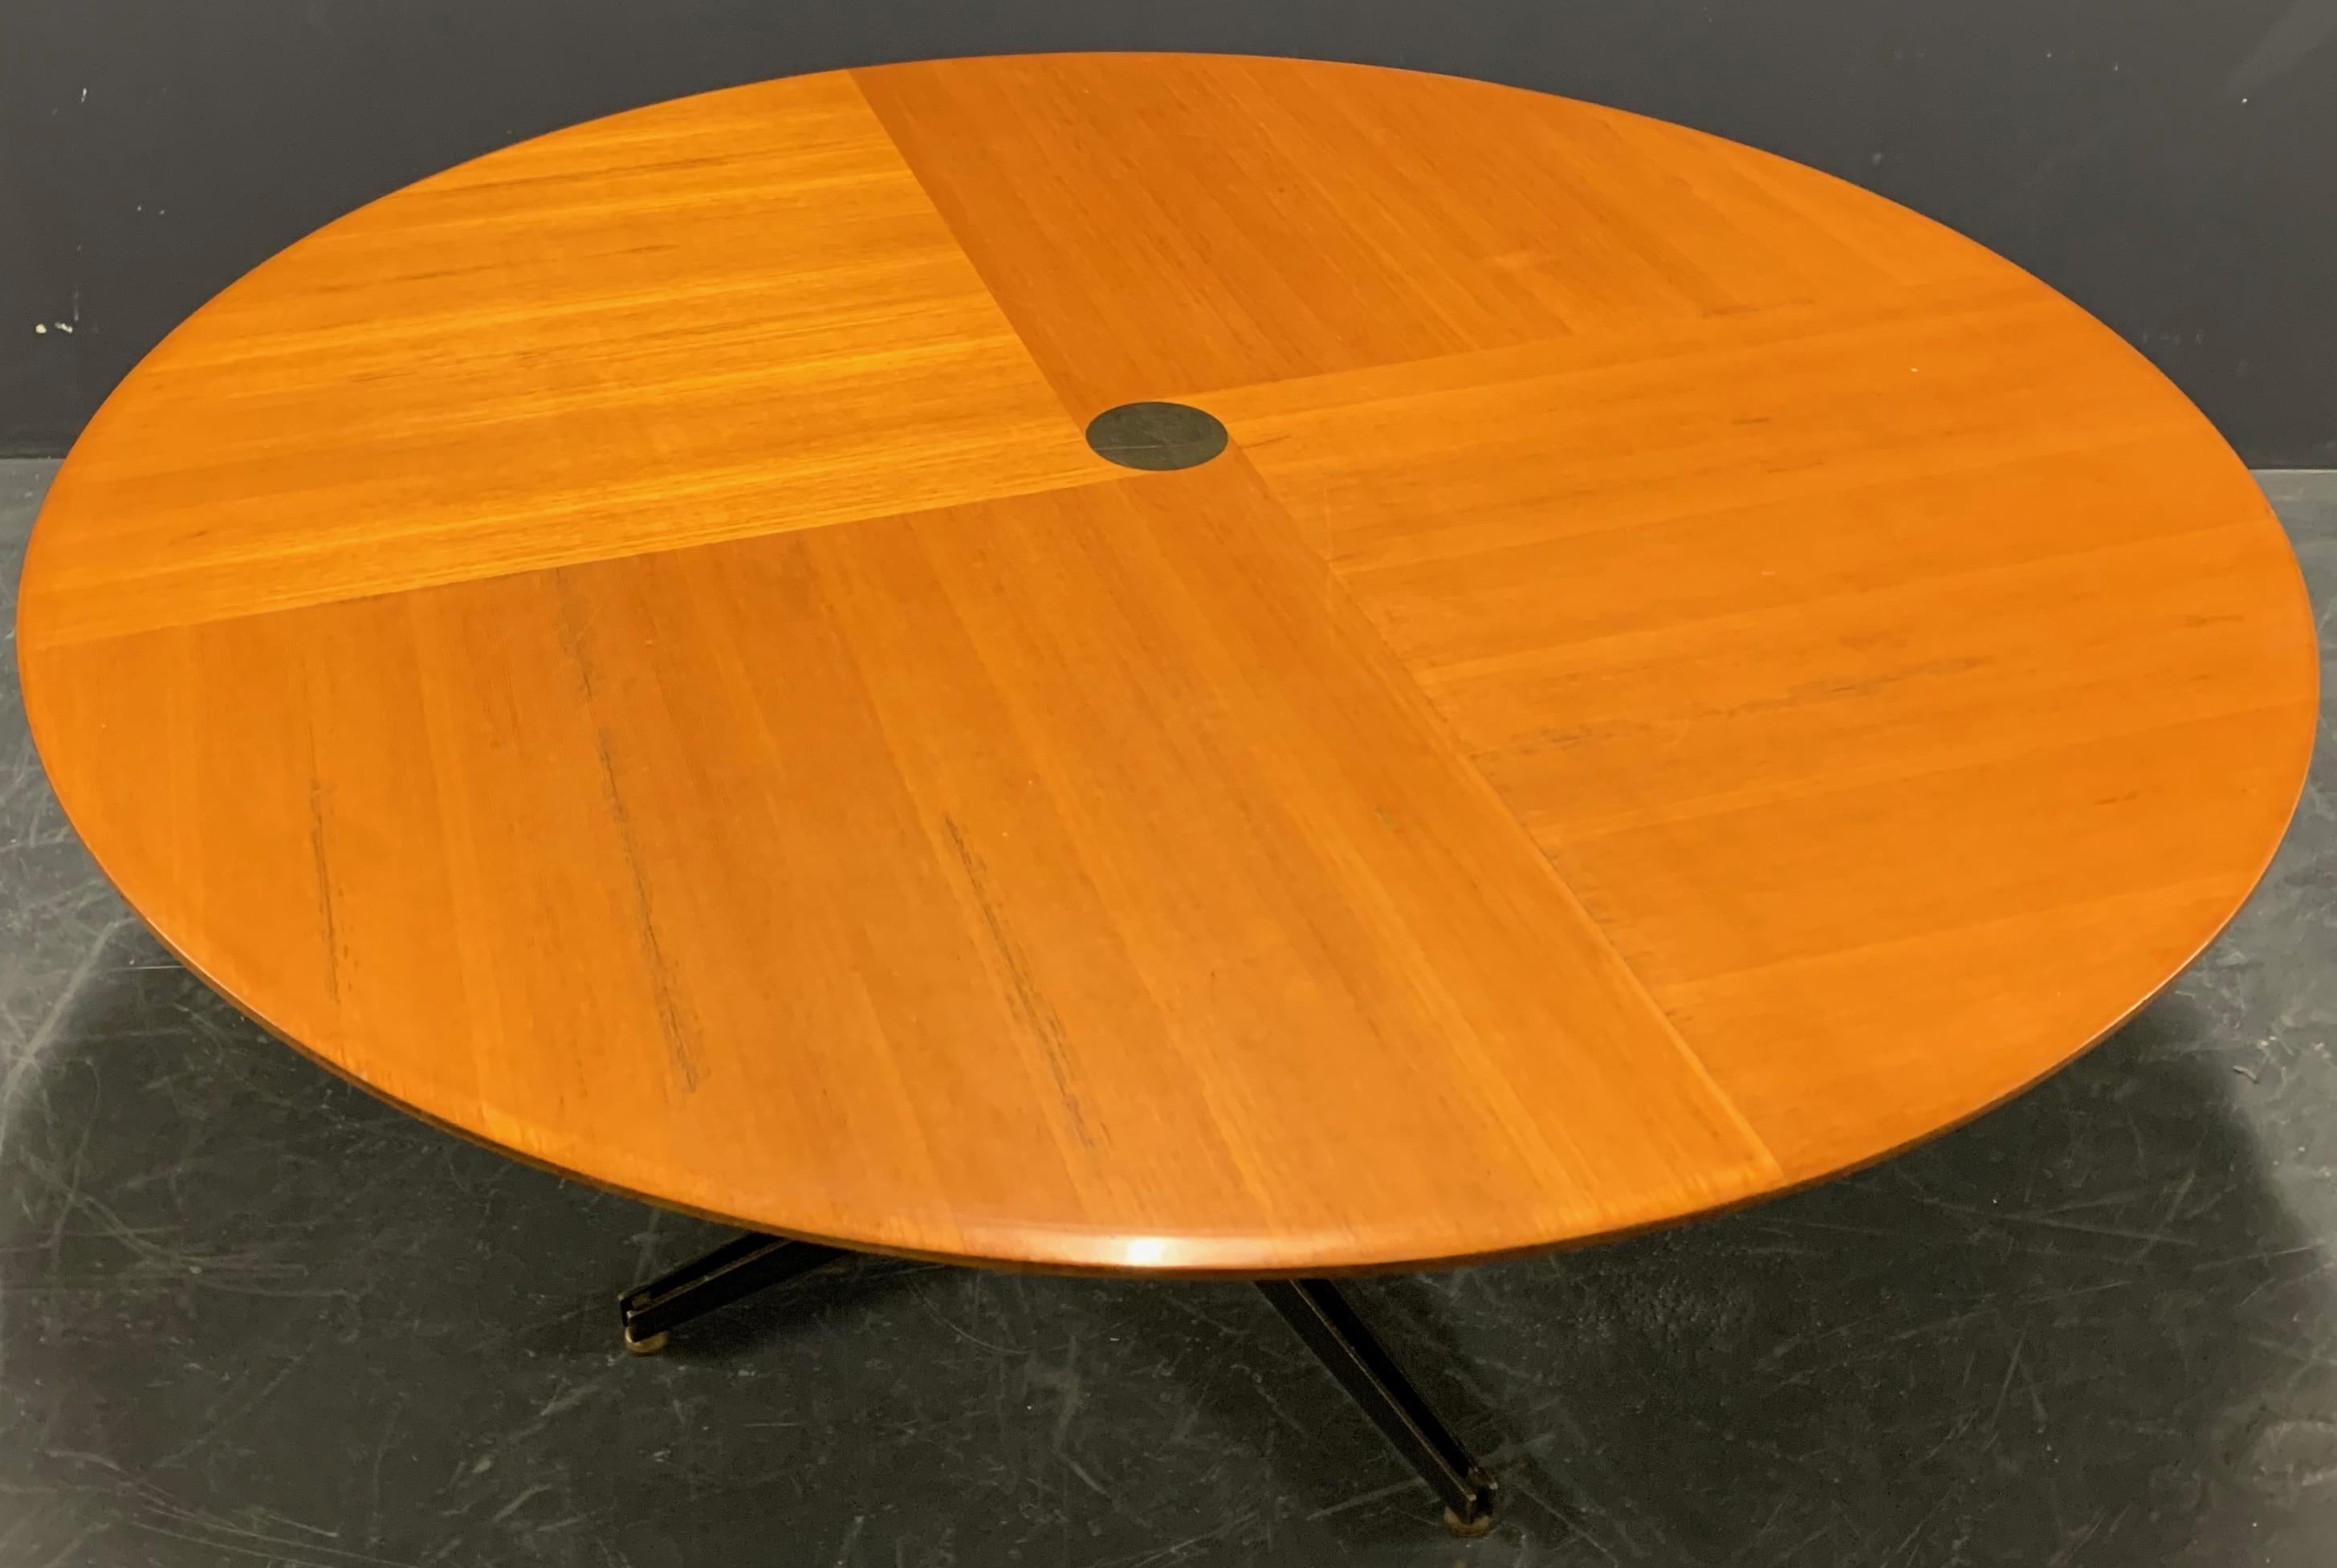 Für tecno/ Italien. Wunderbarer höhenverstellbarer Tisch. Kann in jeder Höhe zwischen 50 und 77 cm verwendet werden. Bemerkenswerte Tischplatte mit erstaunlichem Furnier.